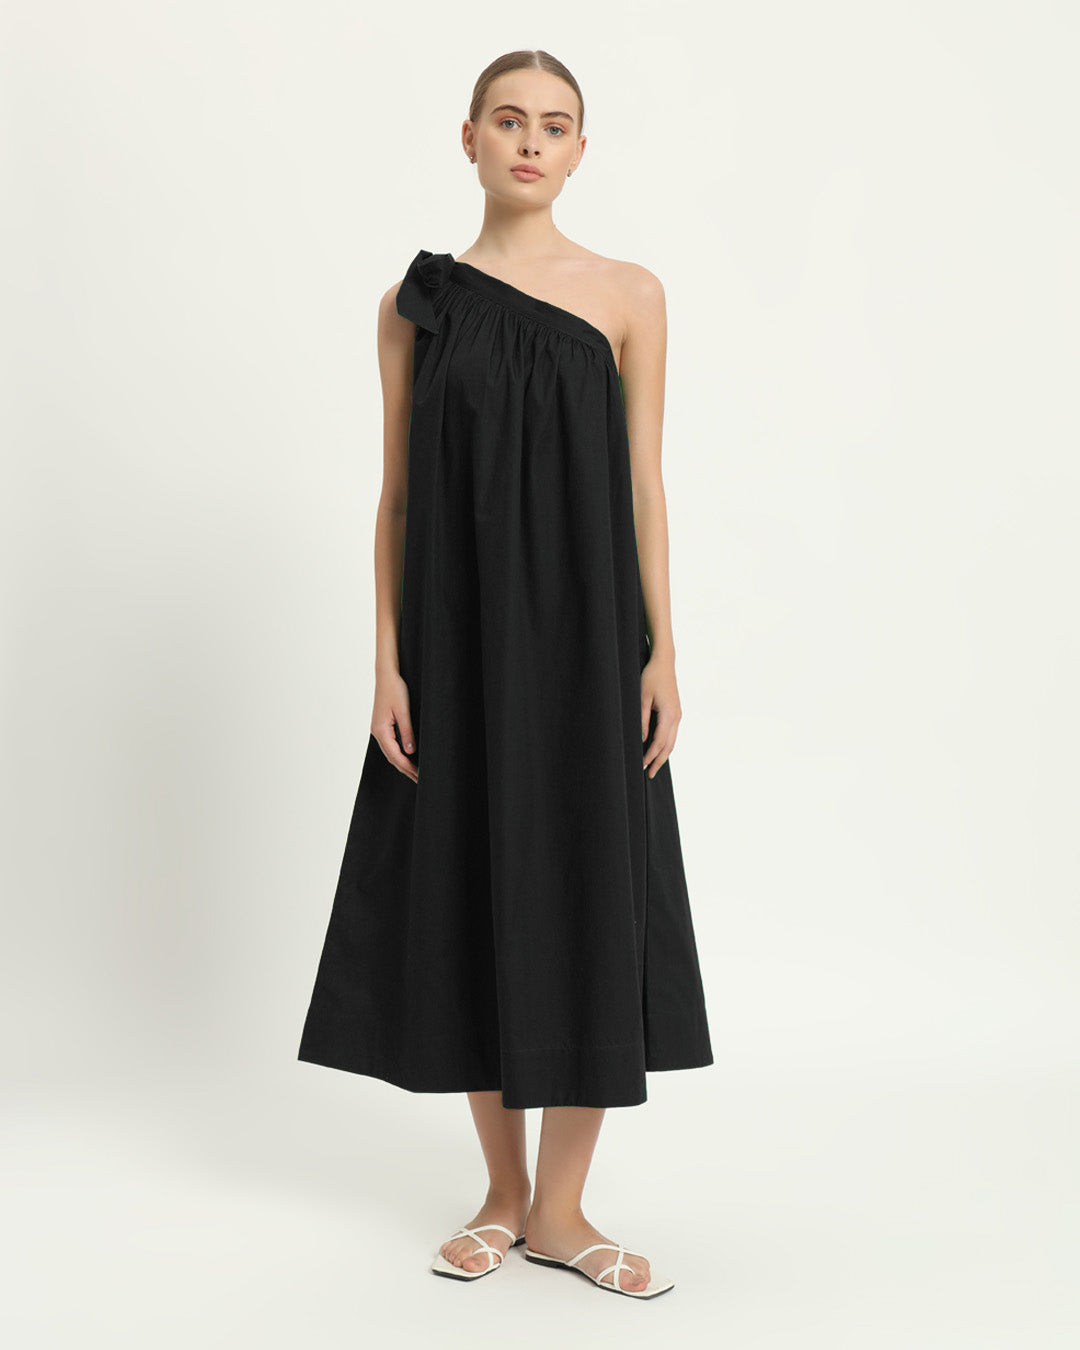 The Strehla Noir Cotton Dress